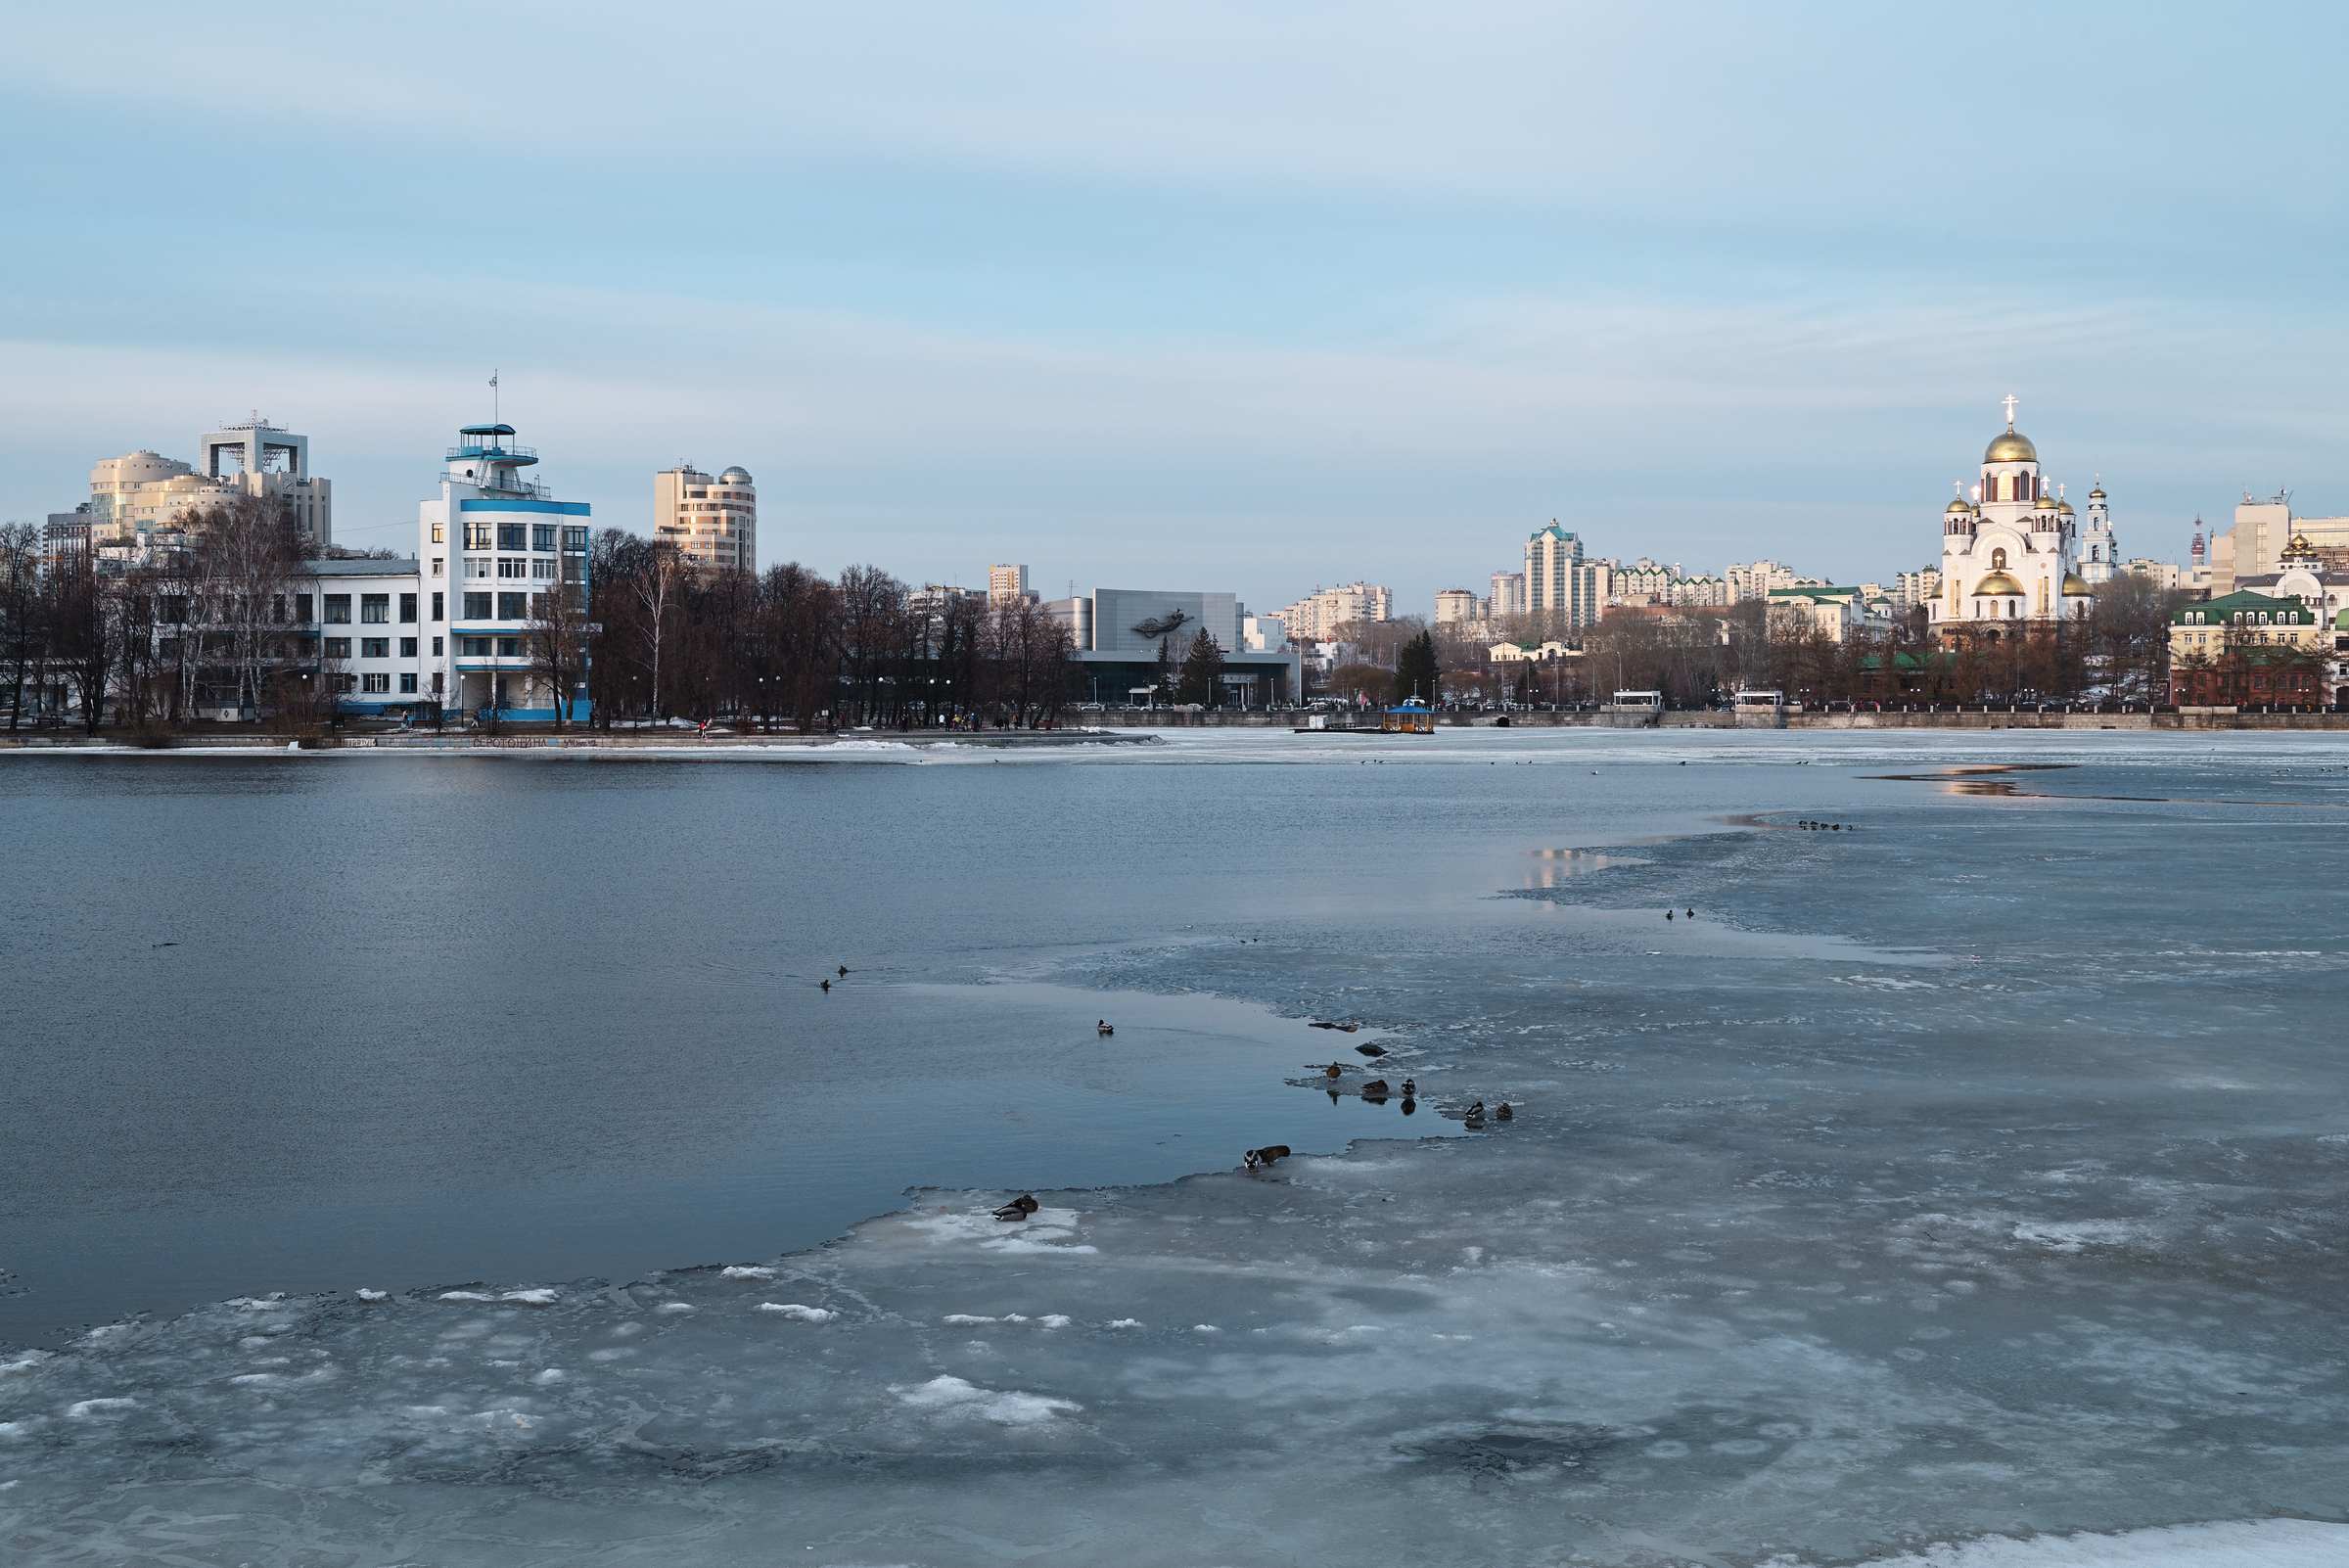 Городской пруд в Екатеринбурге. Вид на стадион Динамо и Храм на Крови.